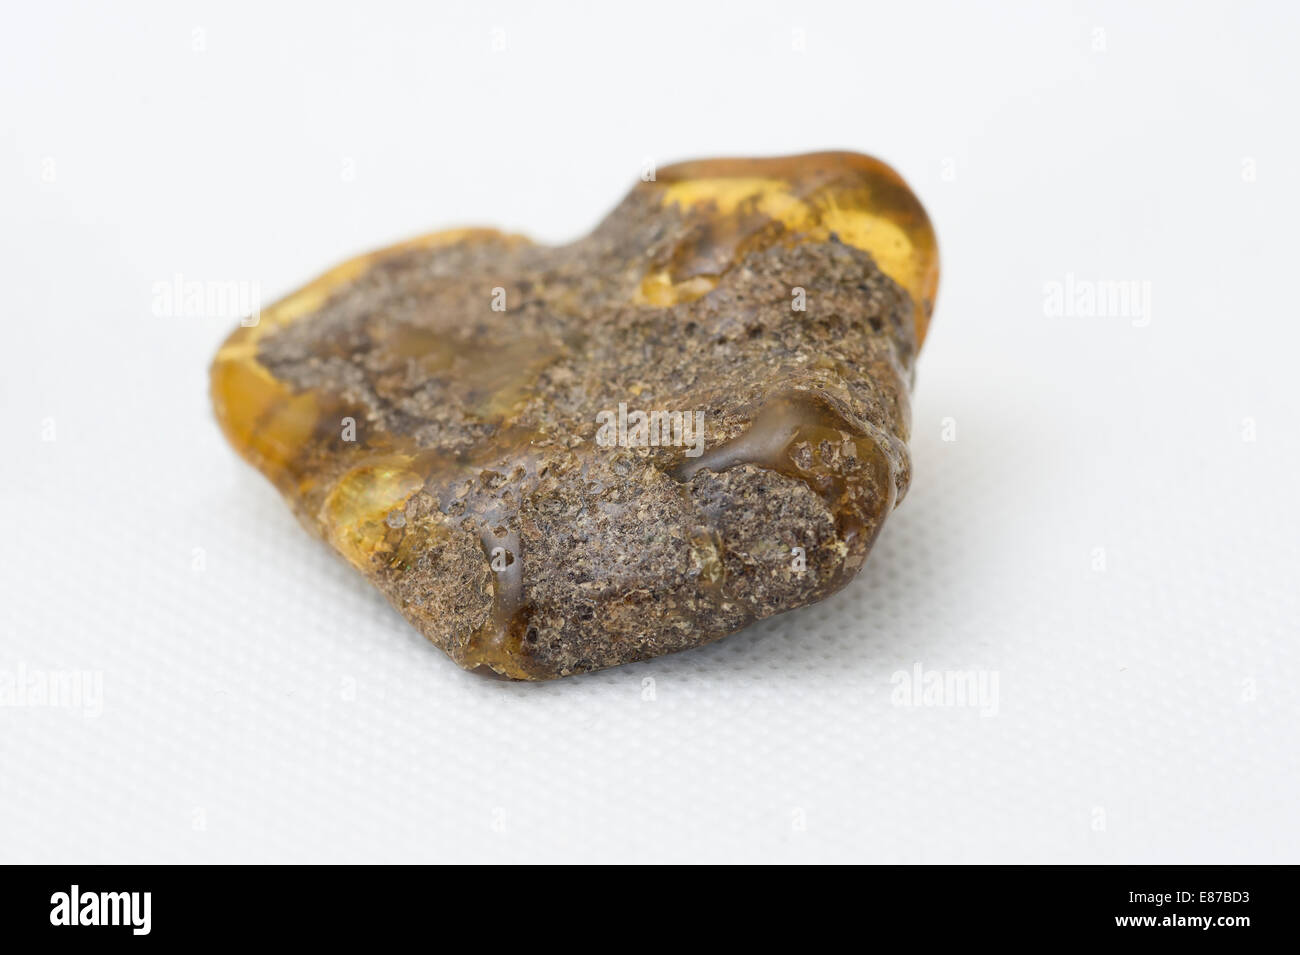 Un morceau de matière première non traitée, l'ambre comme il a été trouvé échoué sur une plage dans la région de la Baltique de l'Europe. Banque D'Images